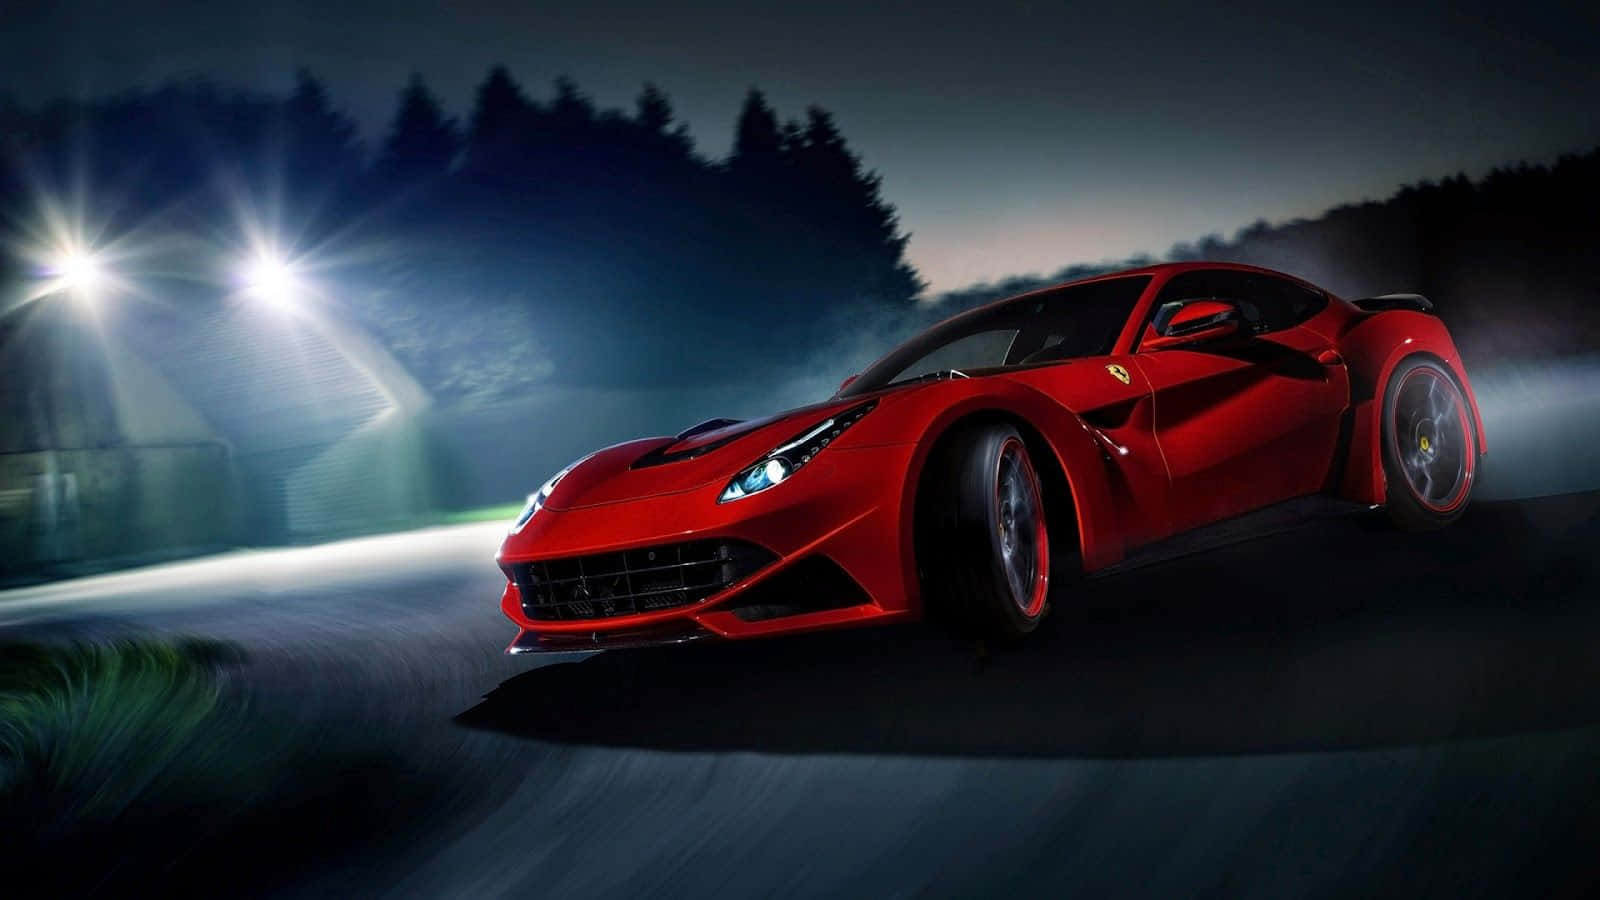 Exquisite Red Ferrari Model Best Car Background